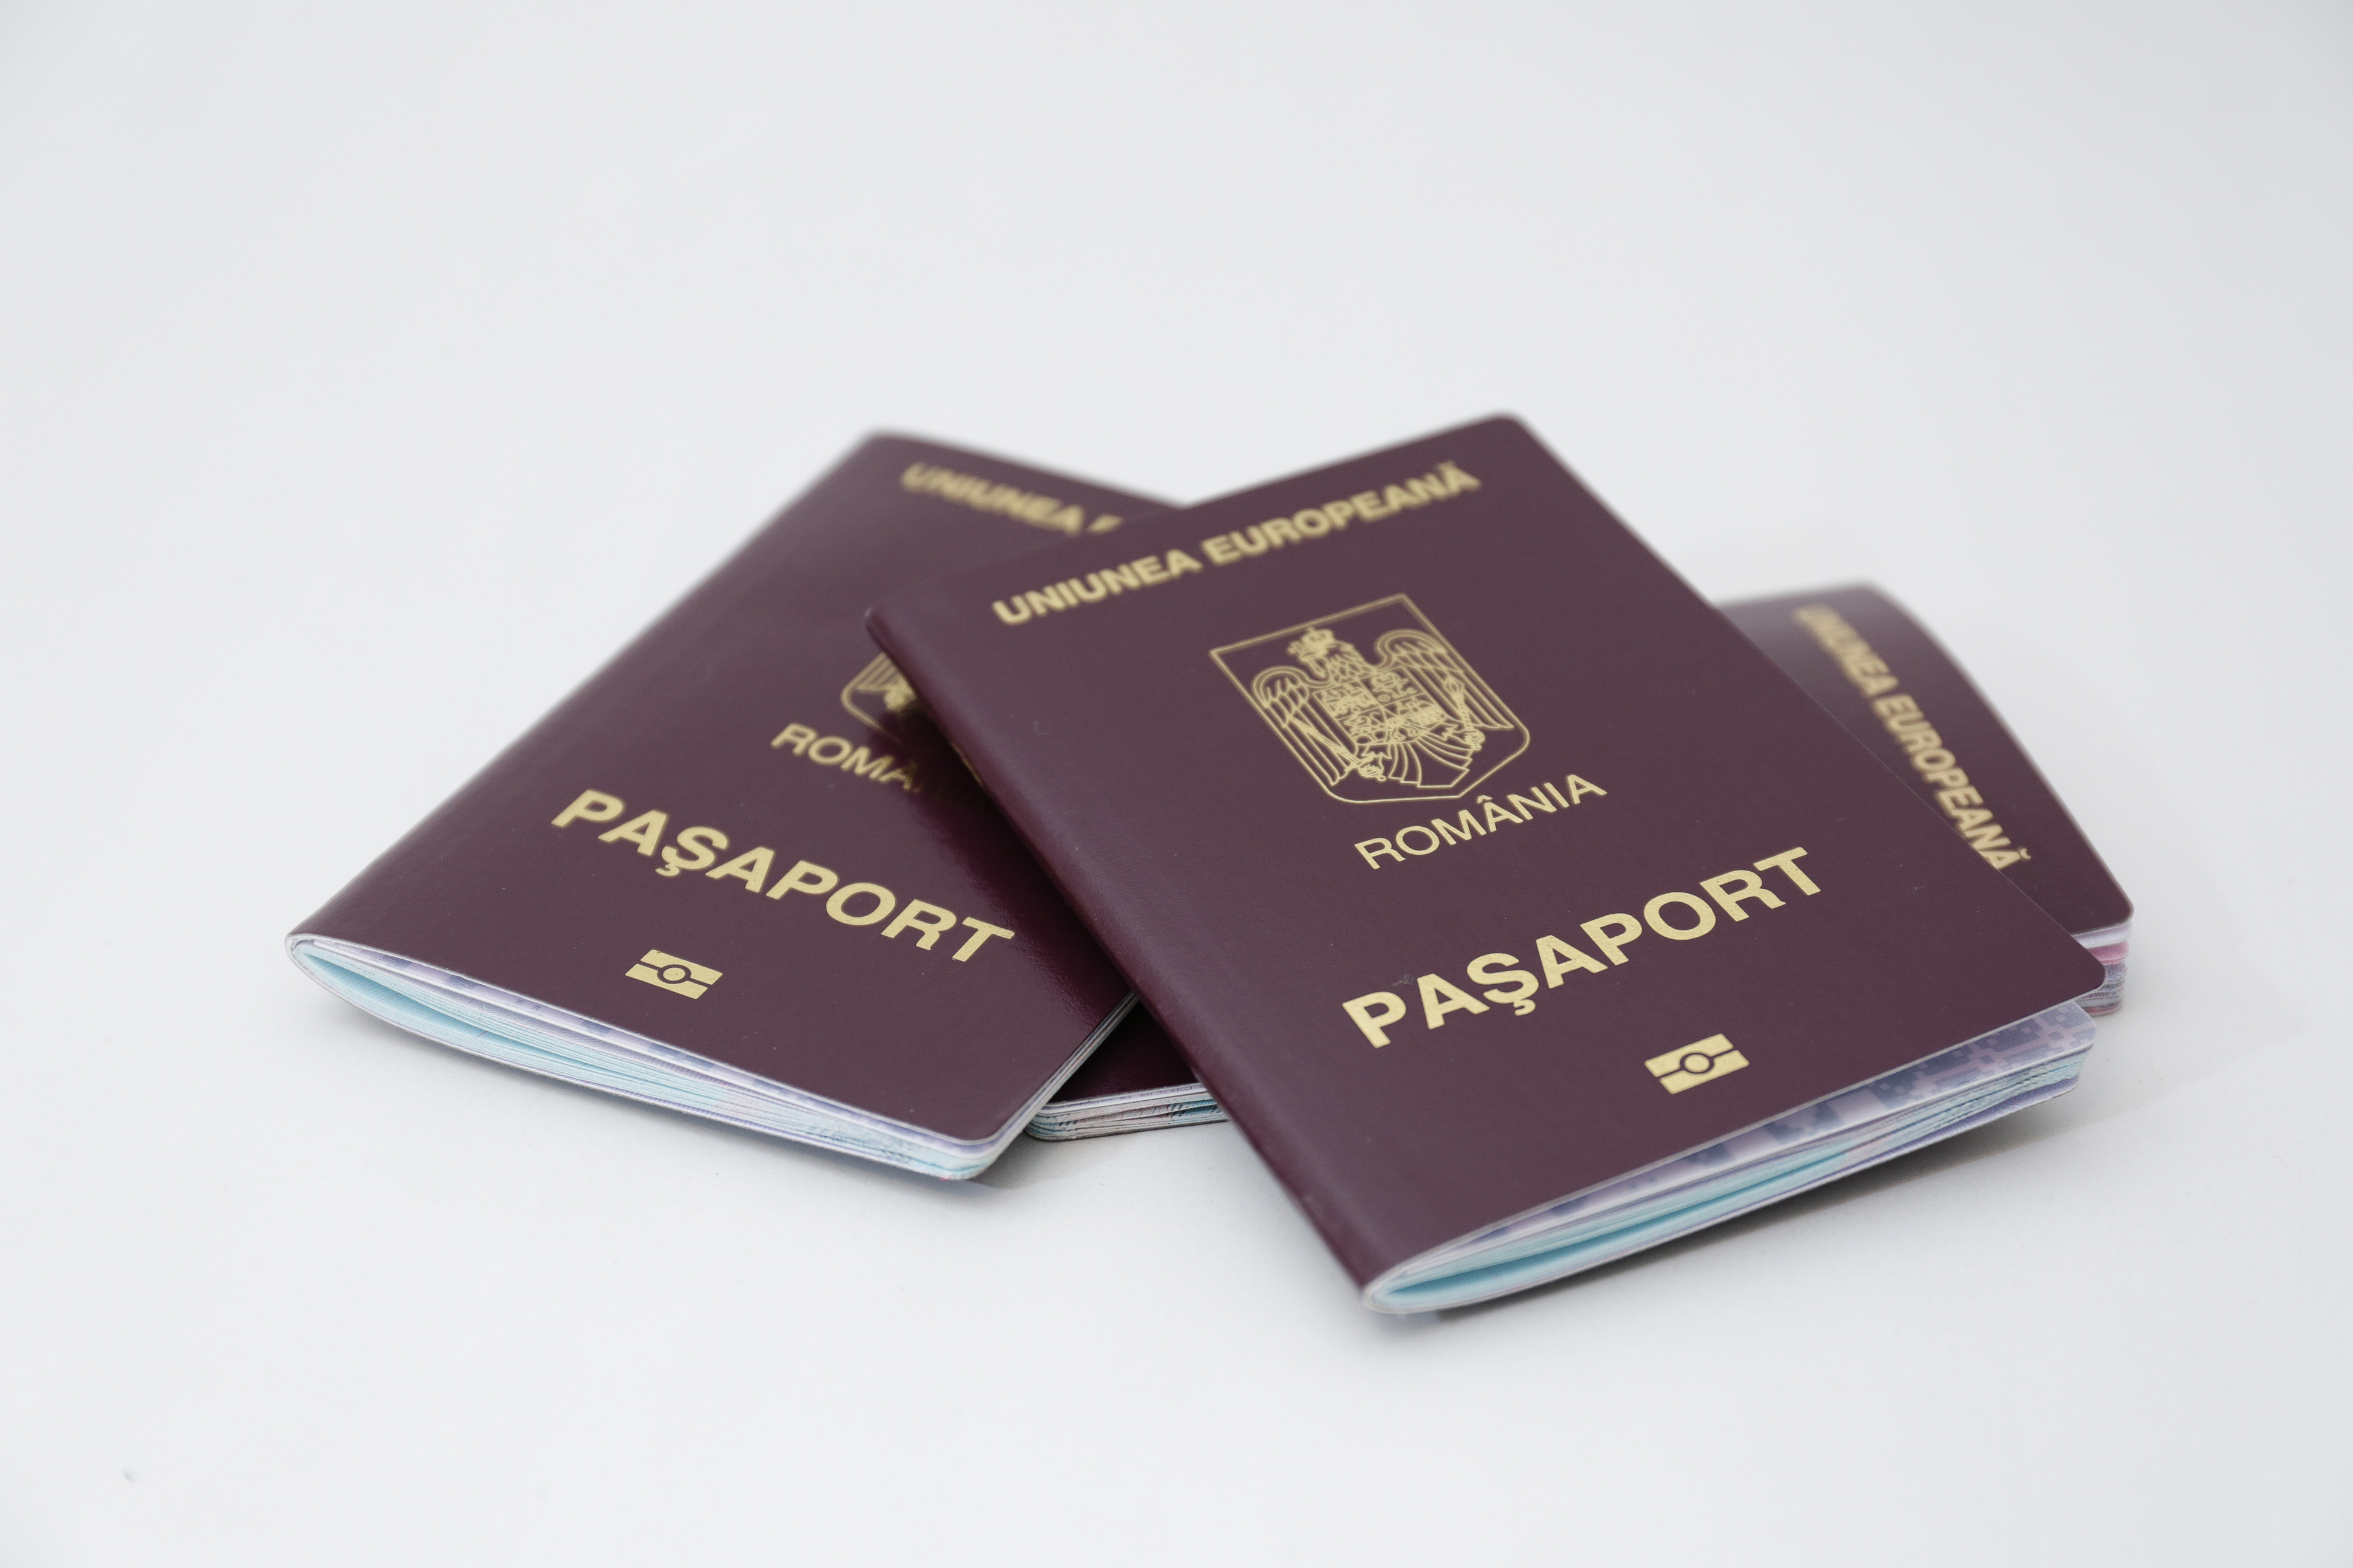 Румынские паспорта, которые иностранцы могут получить по репатриации